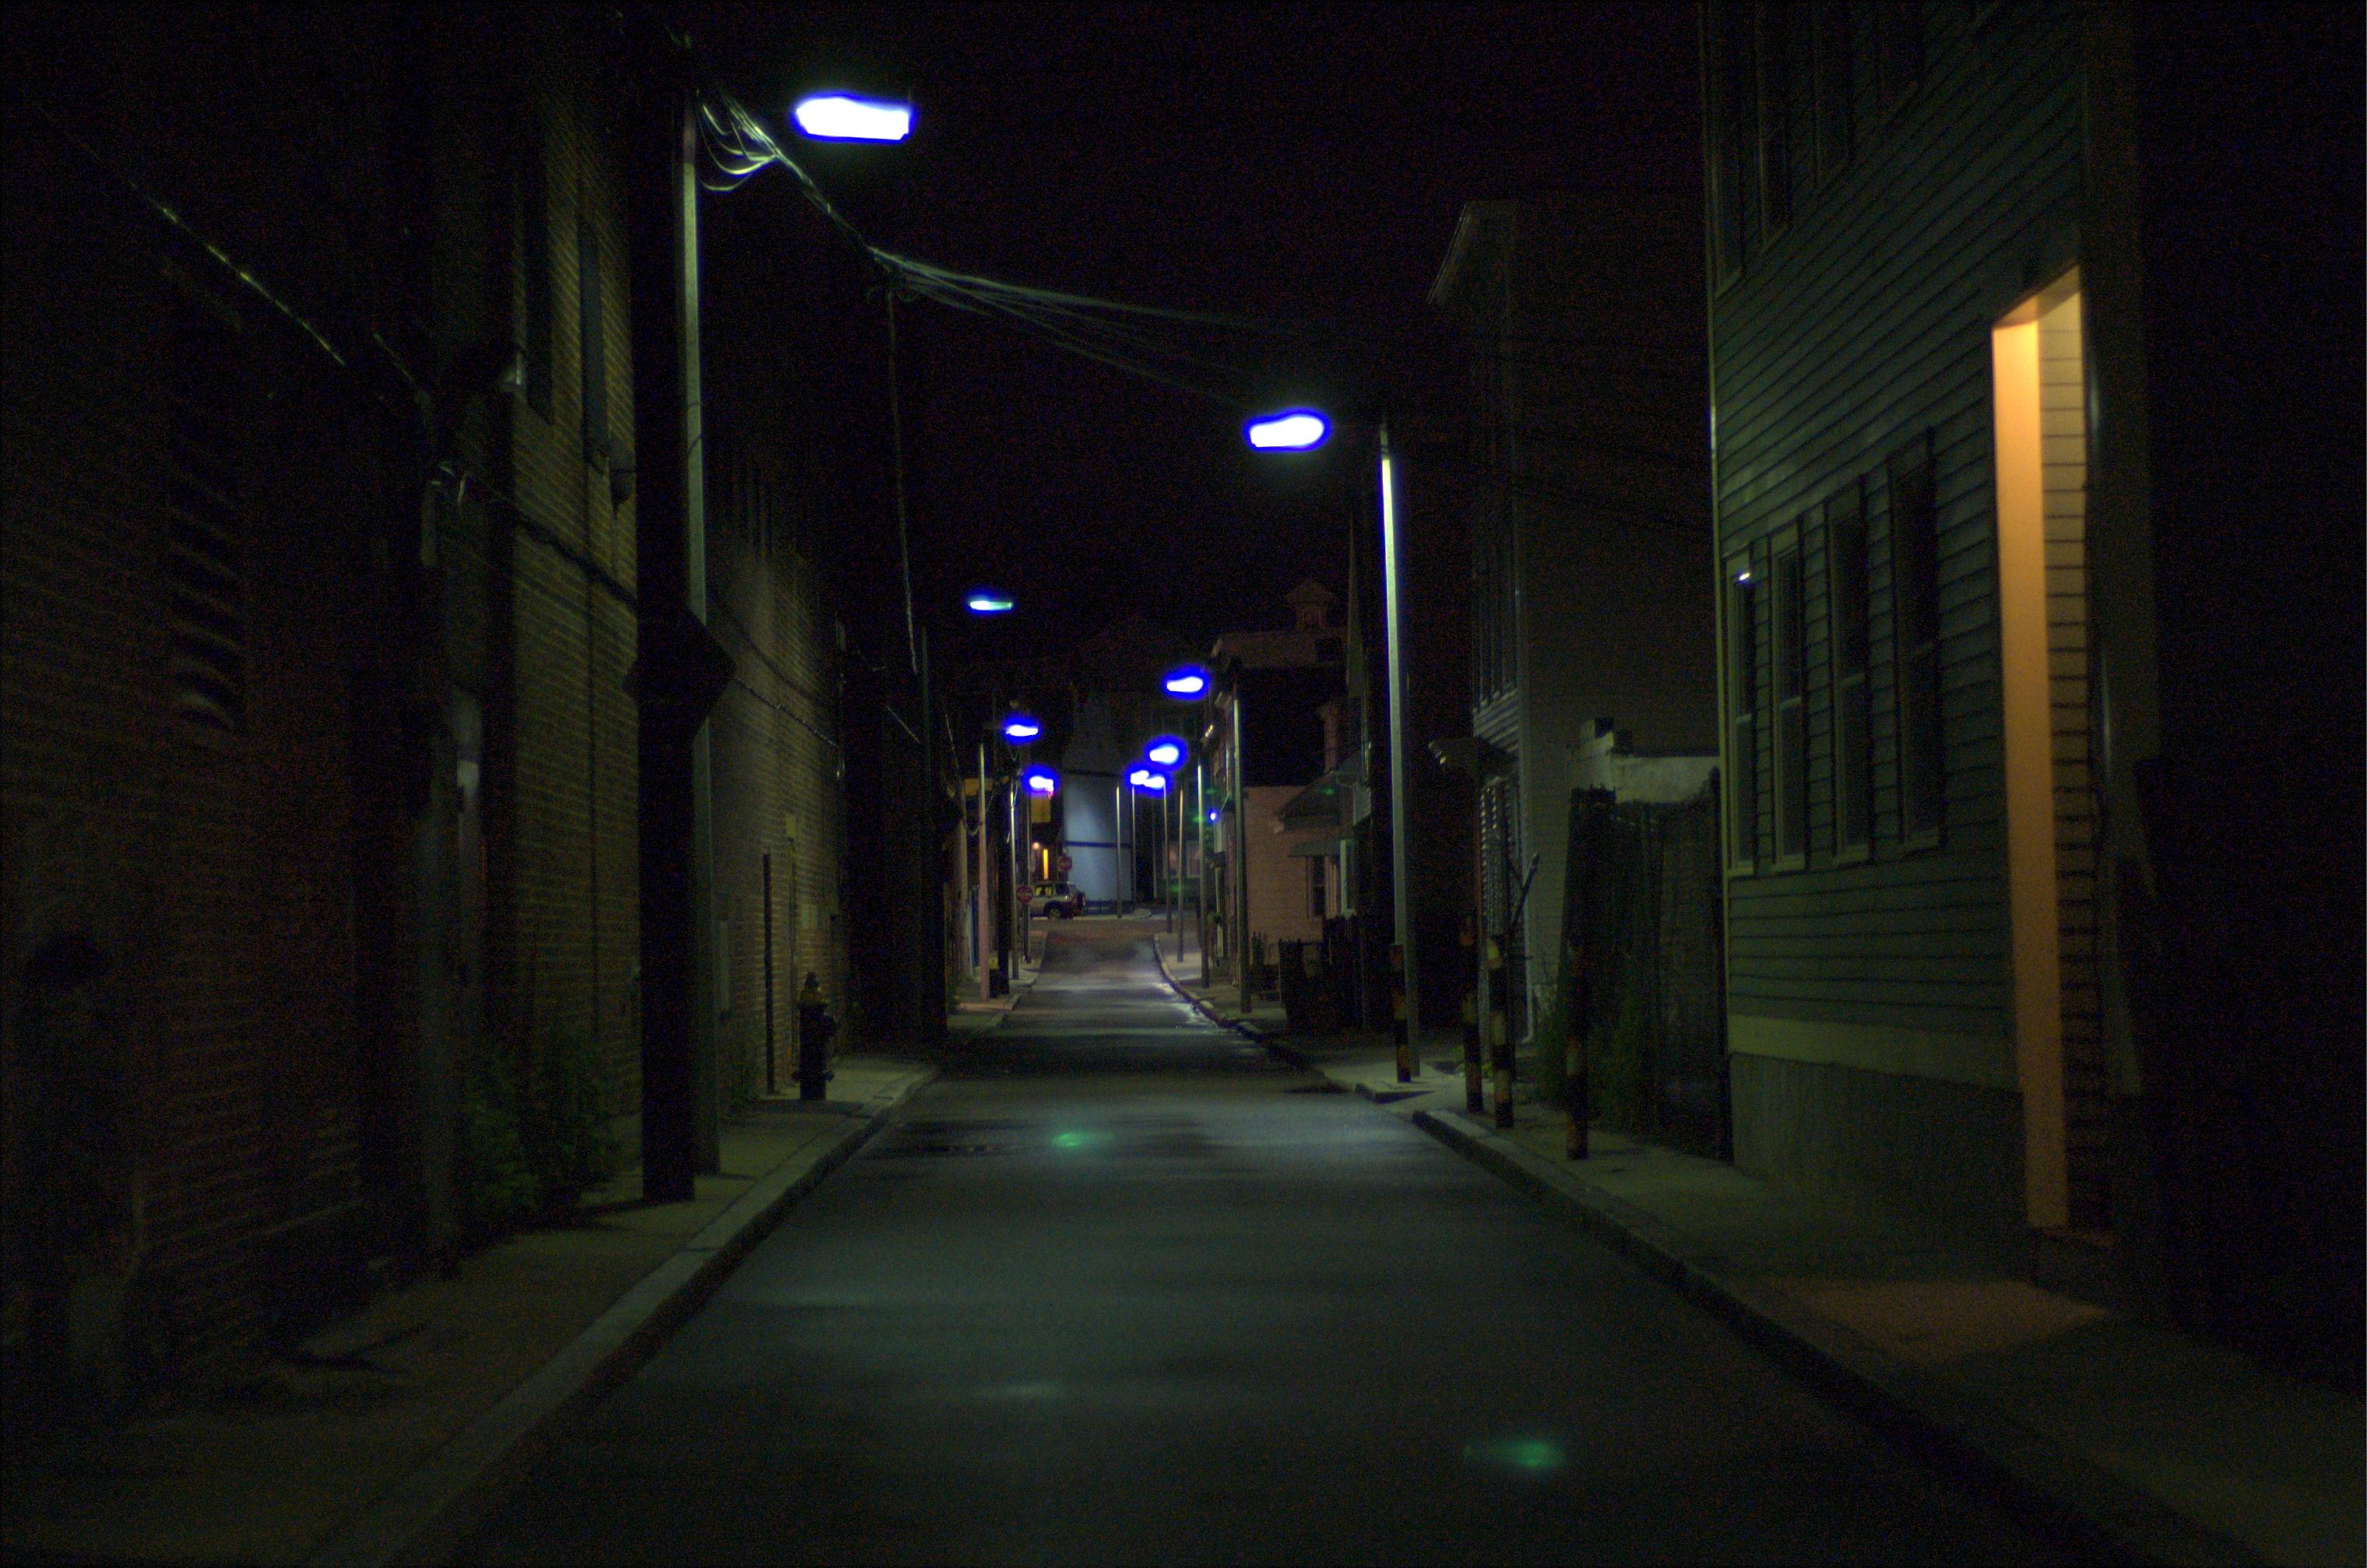 Dark Alleyway Scenery Background Episode